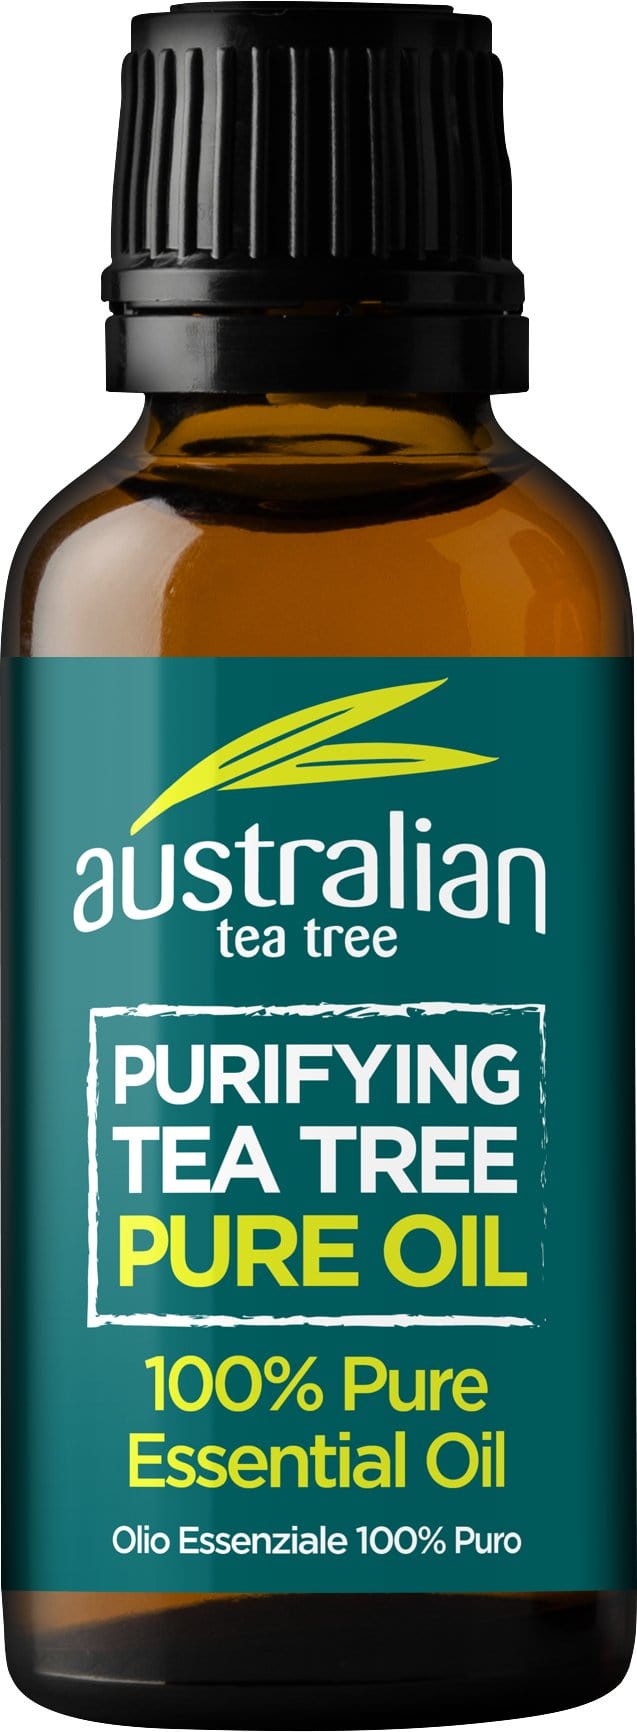 澳大利亚茶树净化茶树油, 25ml